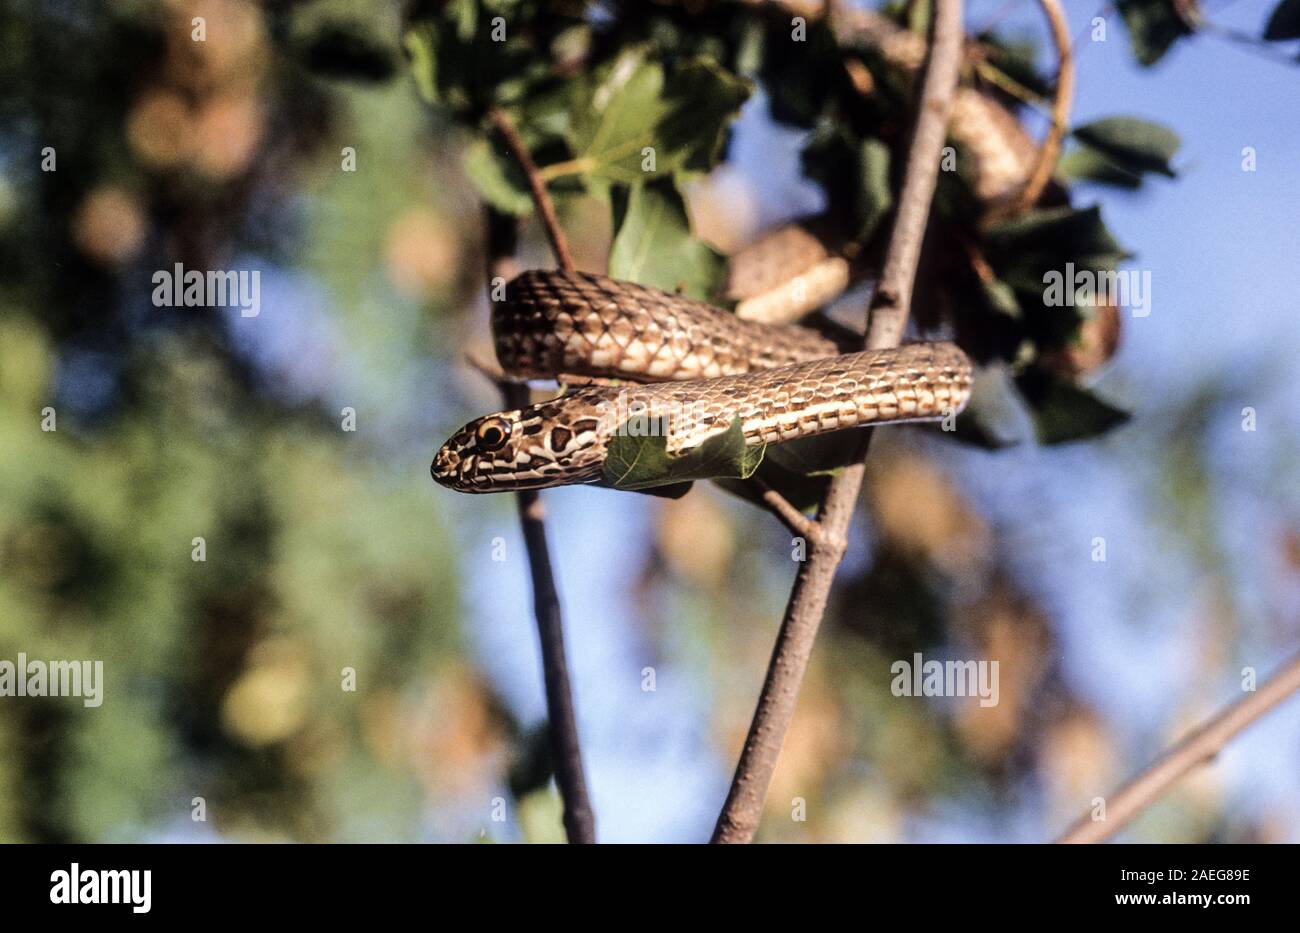 Malpolon monspessulanus, comunemente noto come il serpente di Montpellier, è una specie di blandamente velenosa retro-fanged colubrids. Montpellier snake è molto com Foto Stock